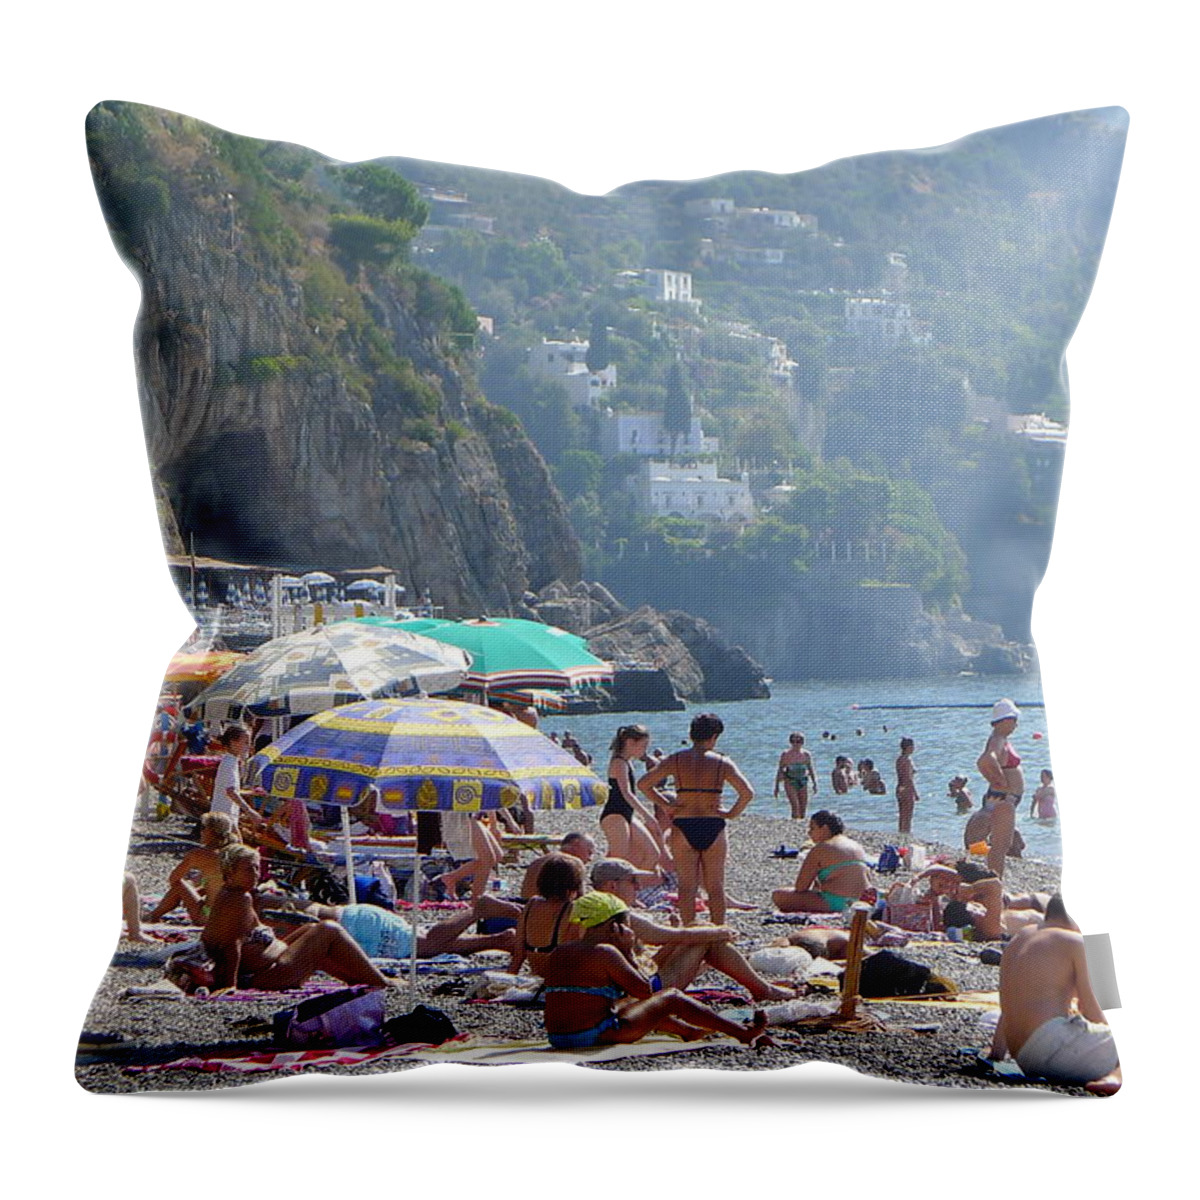  Throw Pillow featuring the photograph Positano - Sono Tutti in Spiaggia by Nora Boghossian